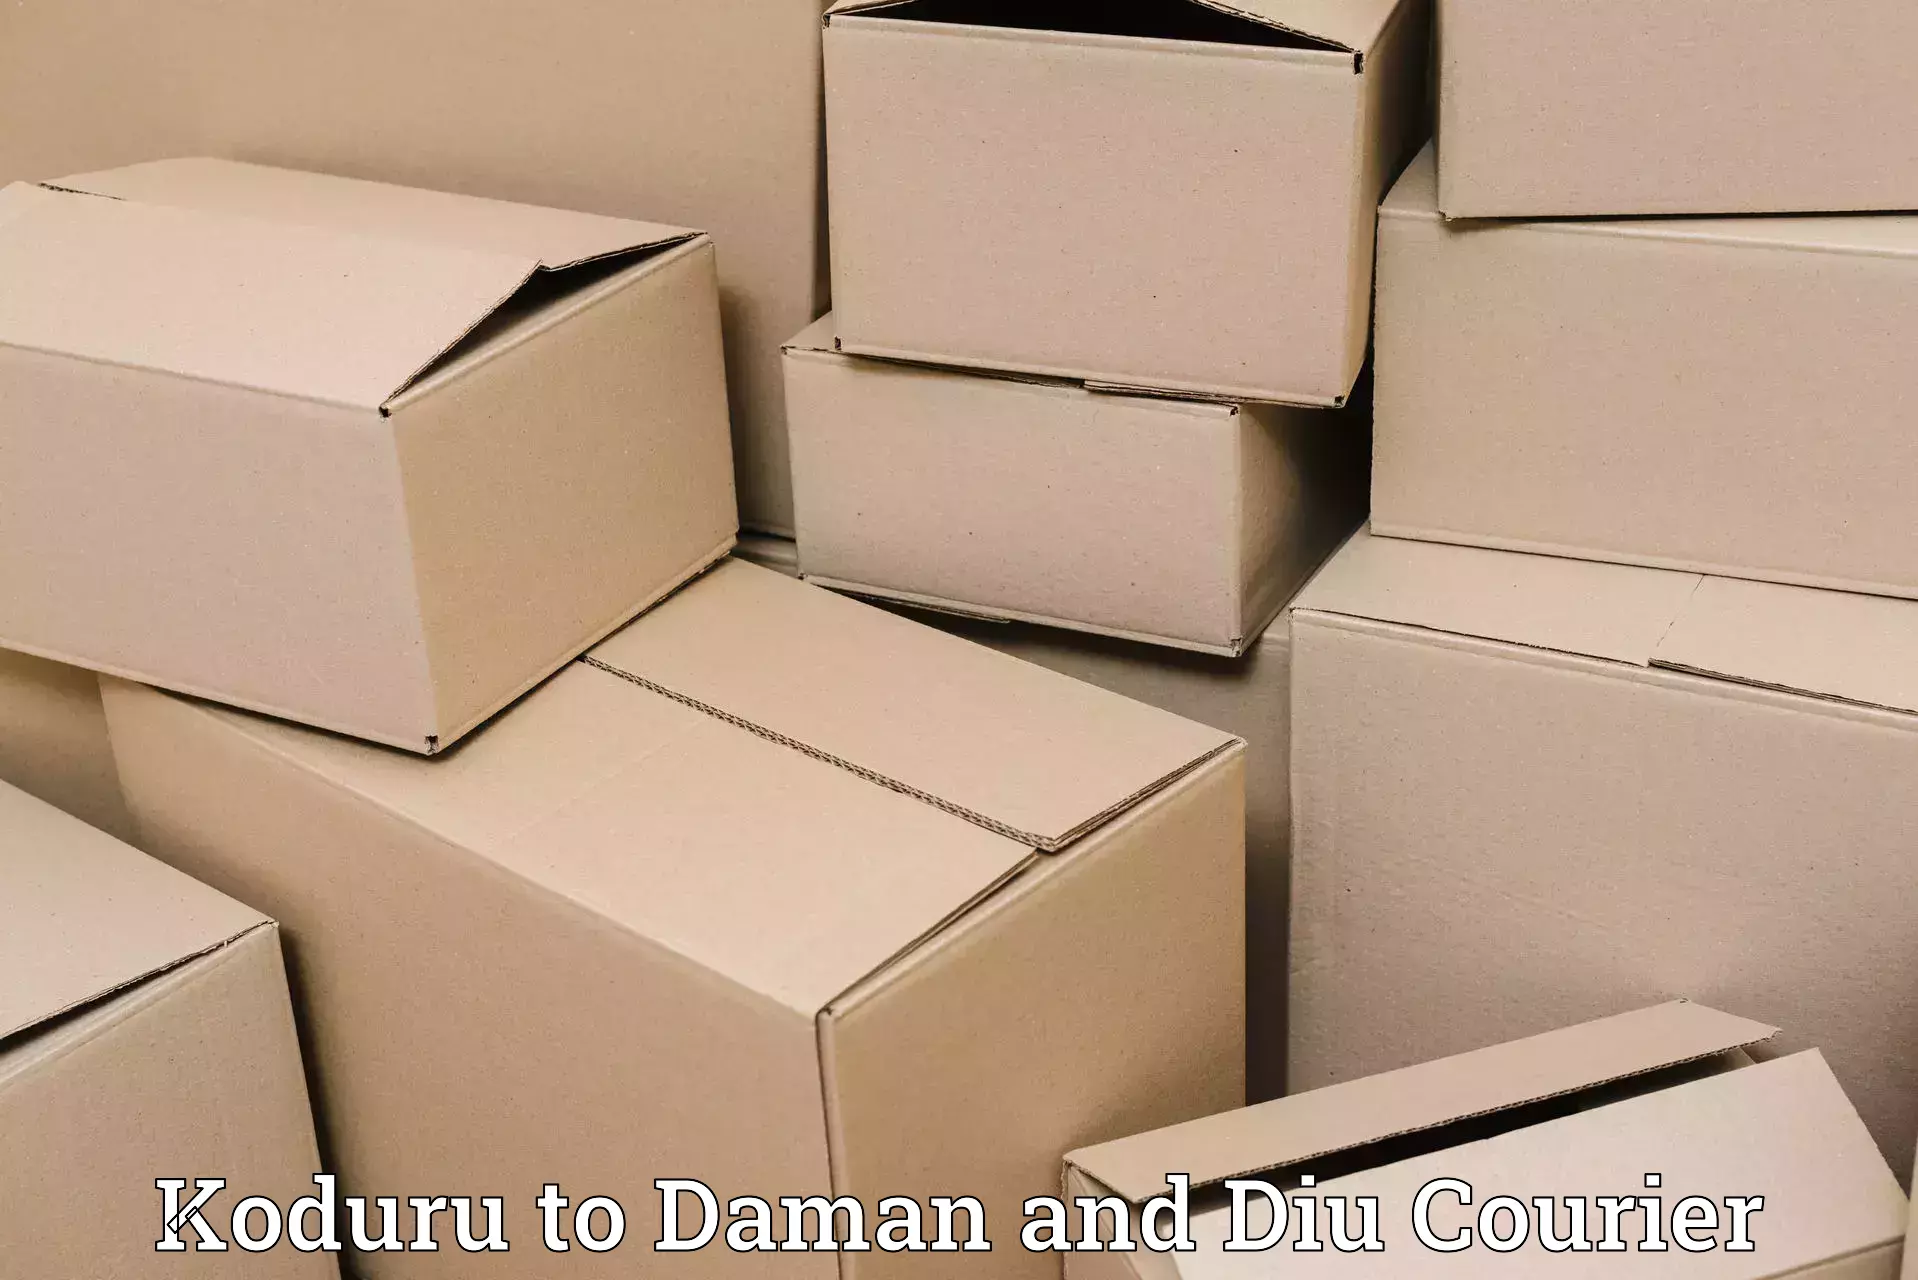 Cost-effective shipping solutions Koduru to Daman